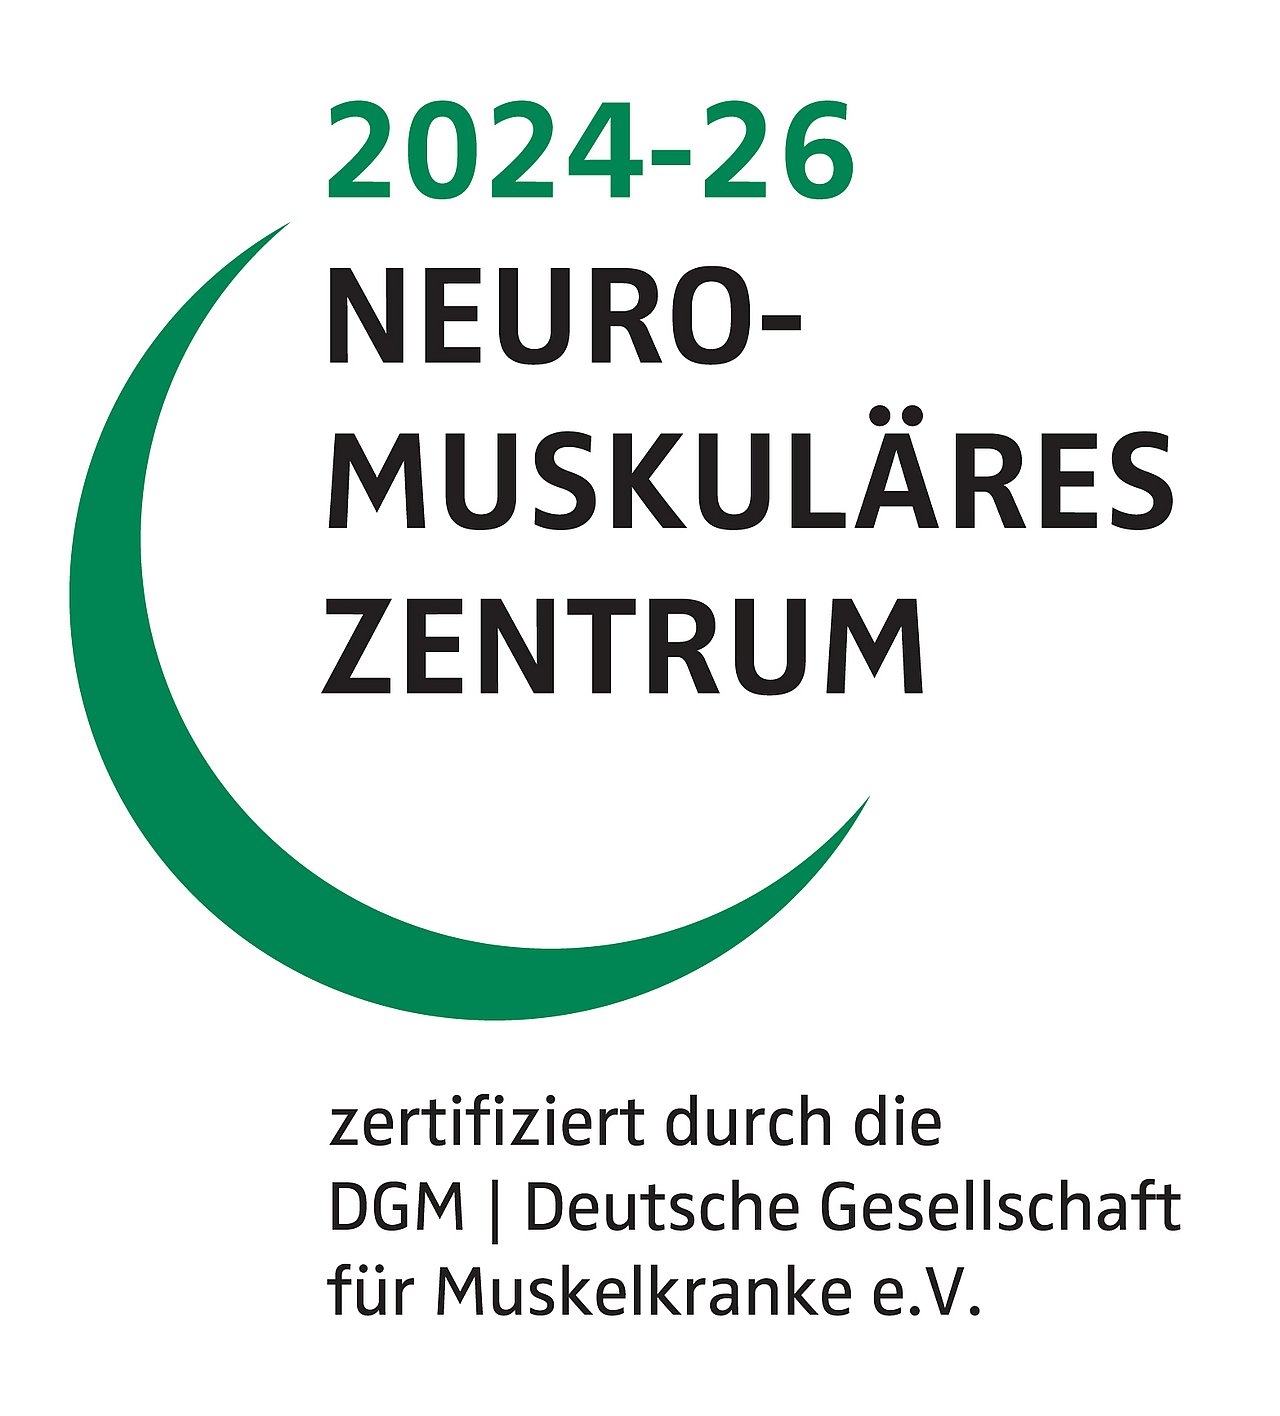 Zertifiziert durch die DGM Deutsche Gesellschaft für Muskelkranke e.v.